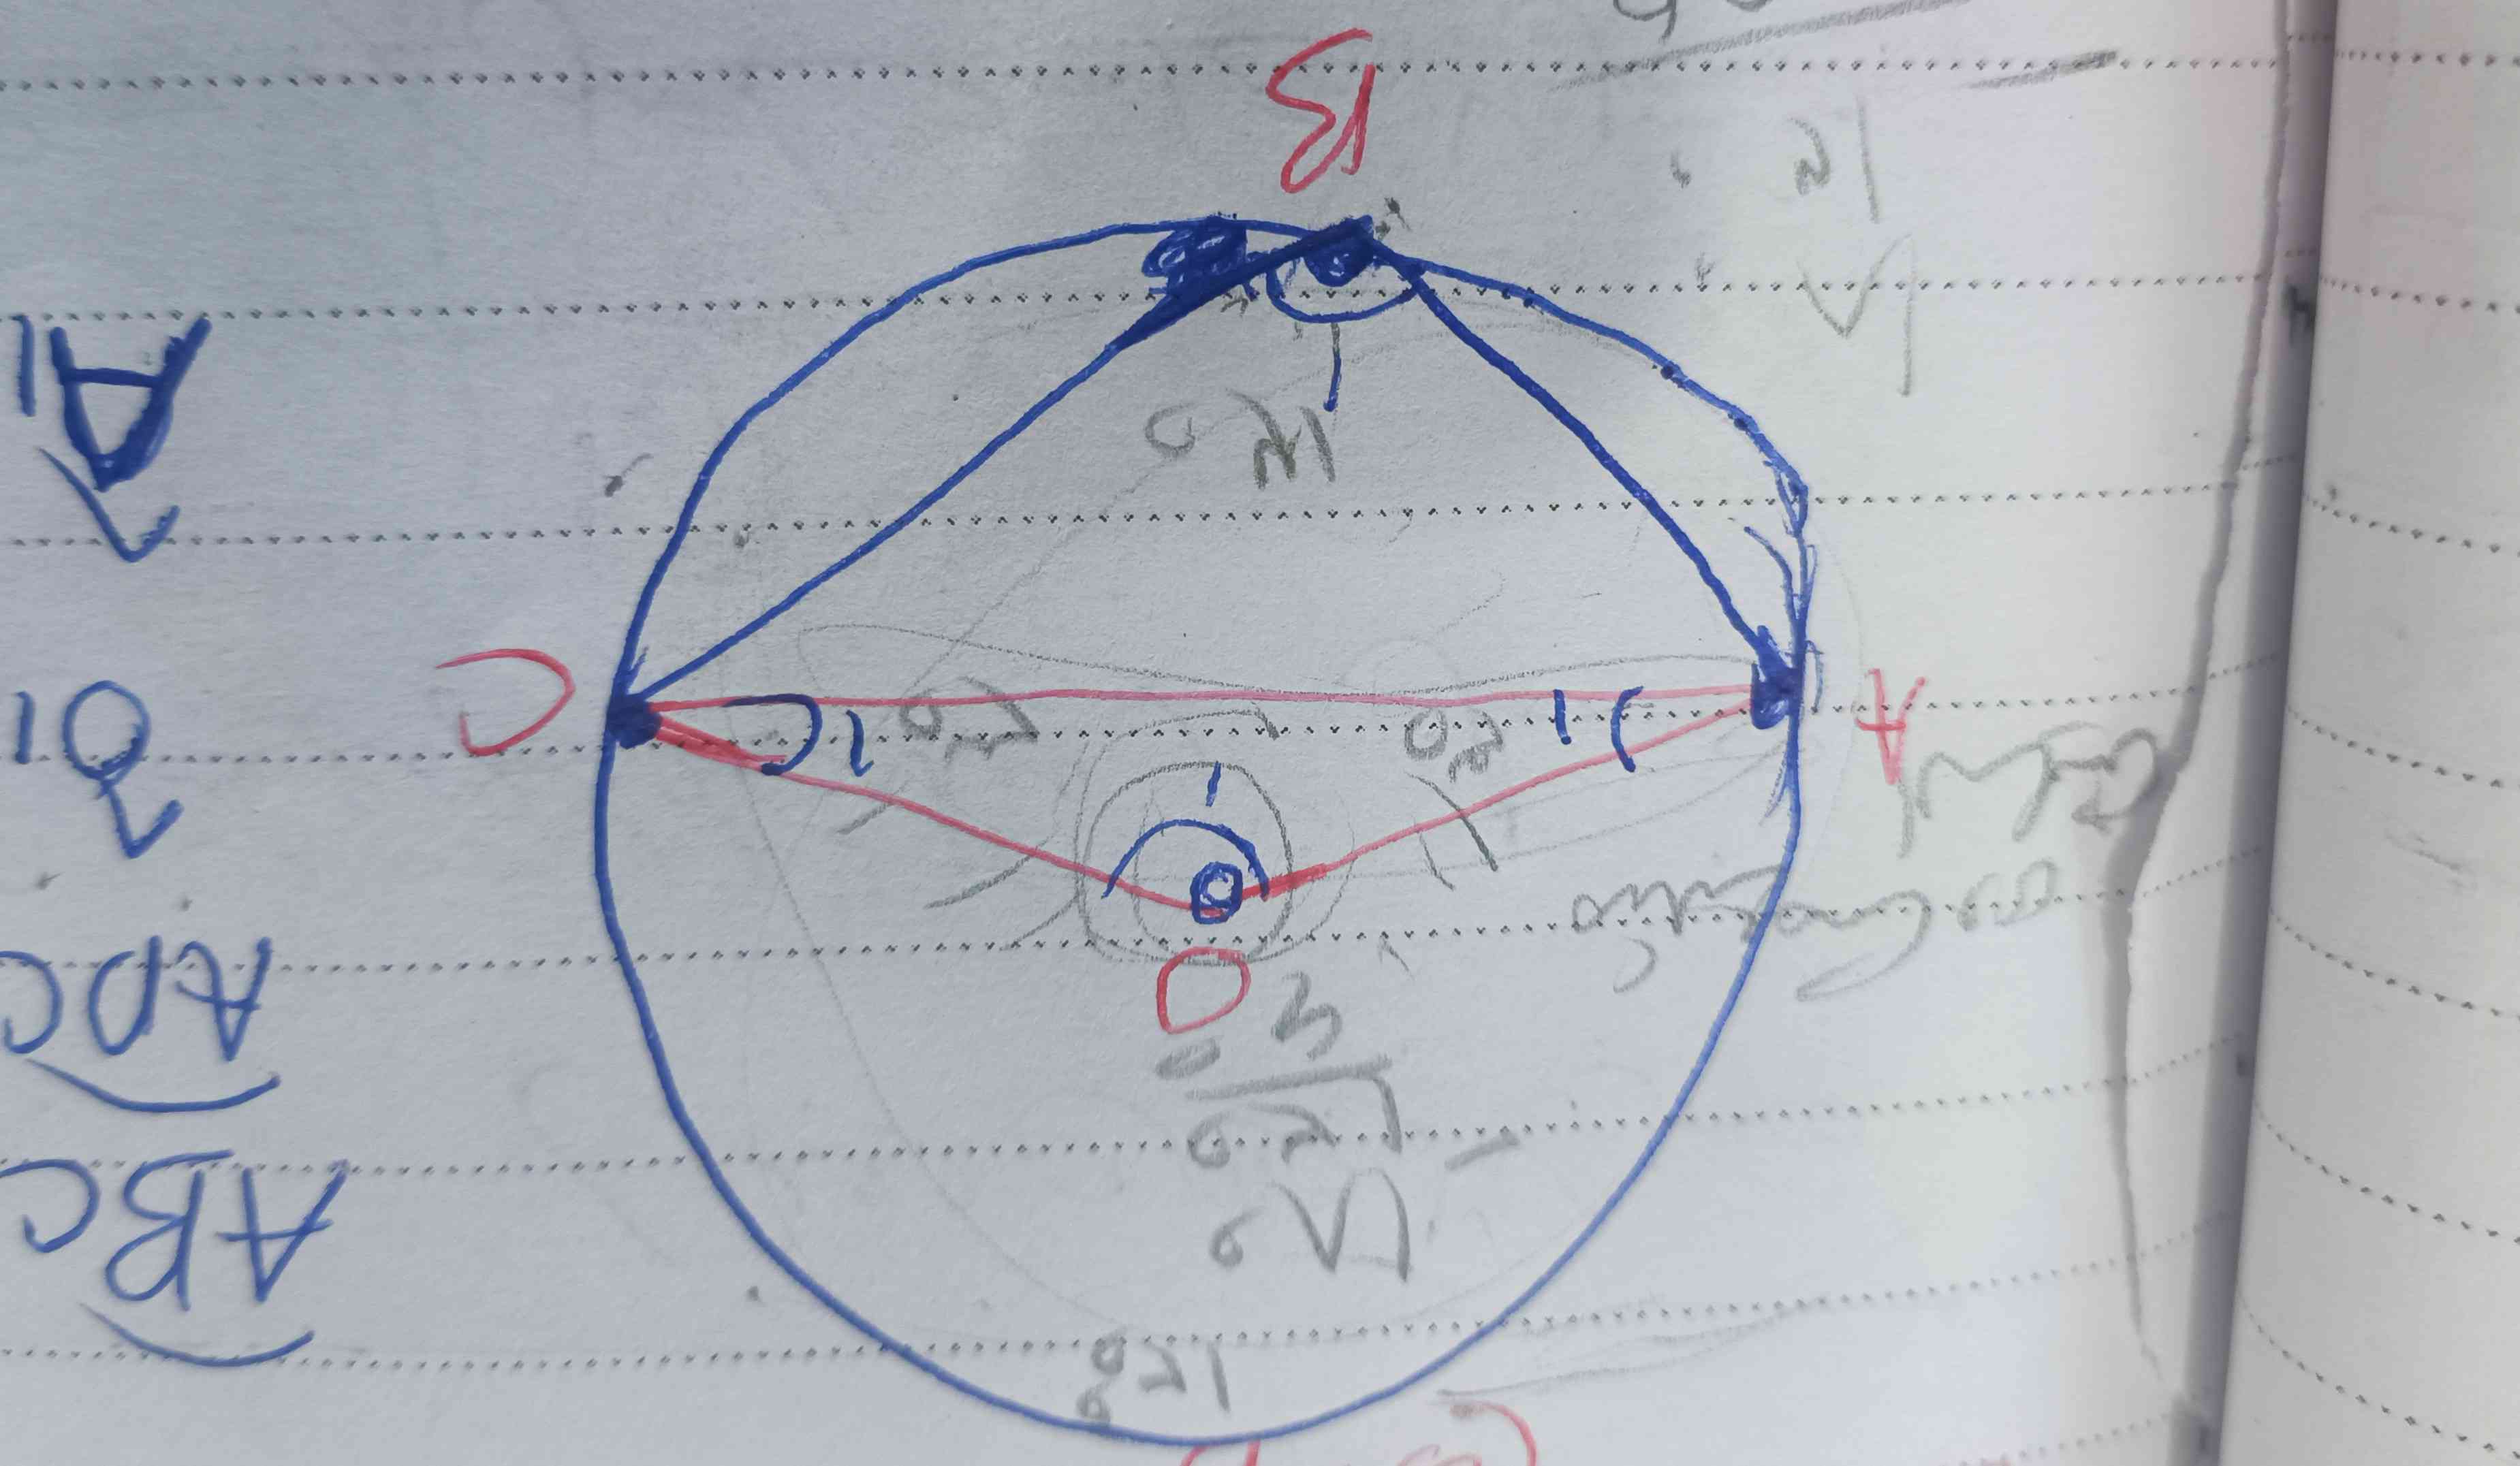 زاویه a و زاویه c را چجوری بدست آوردیم در داخل مثلث